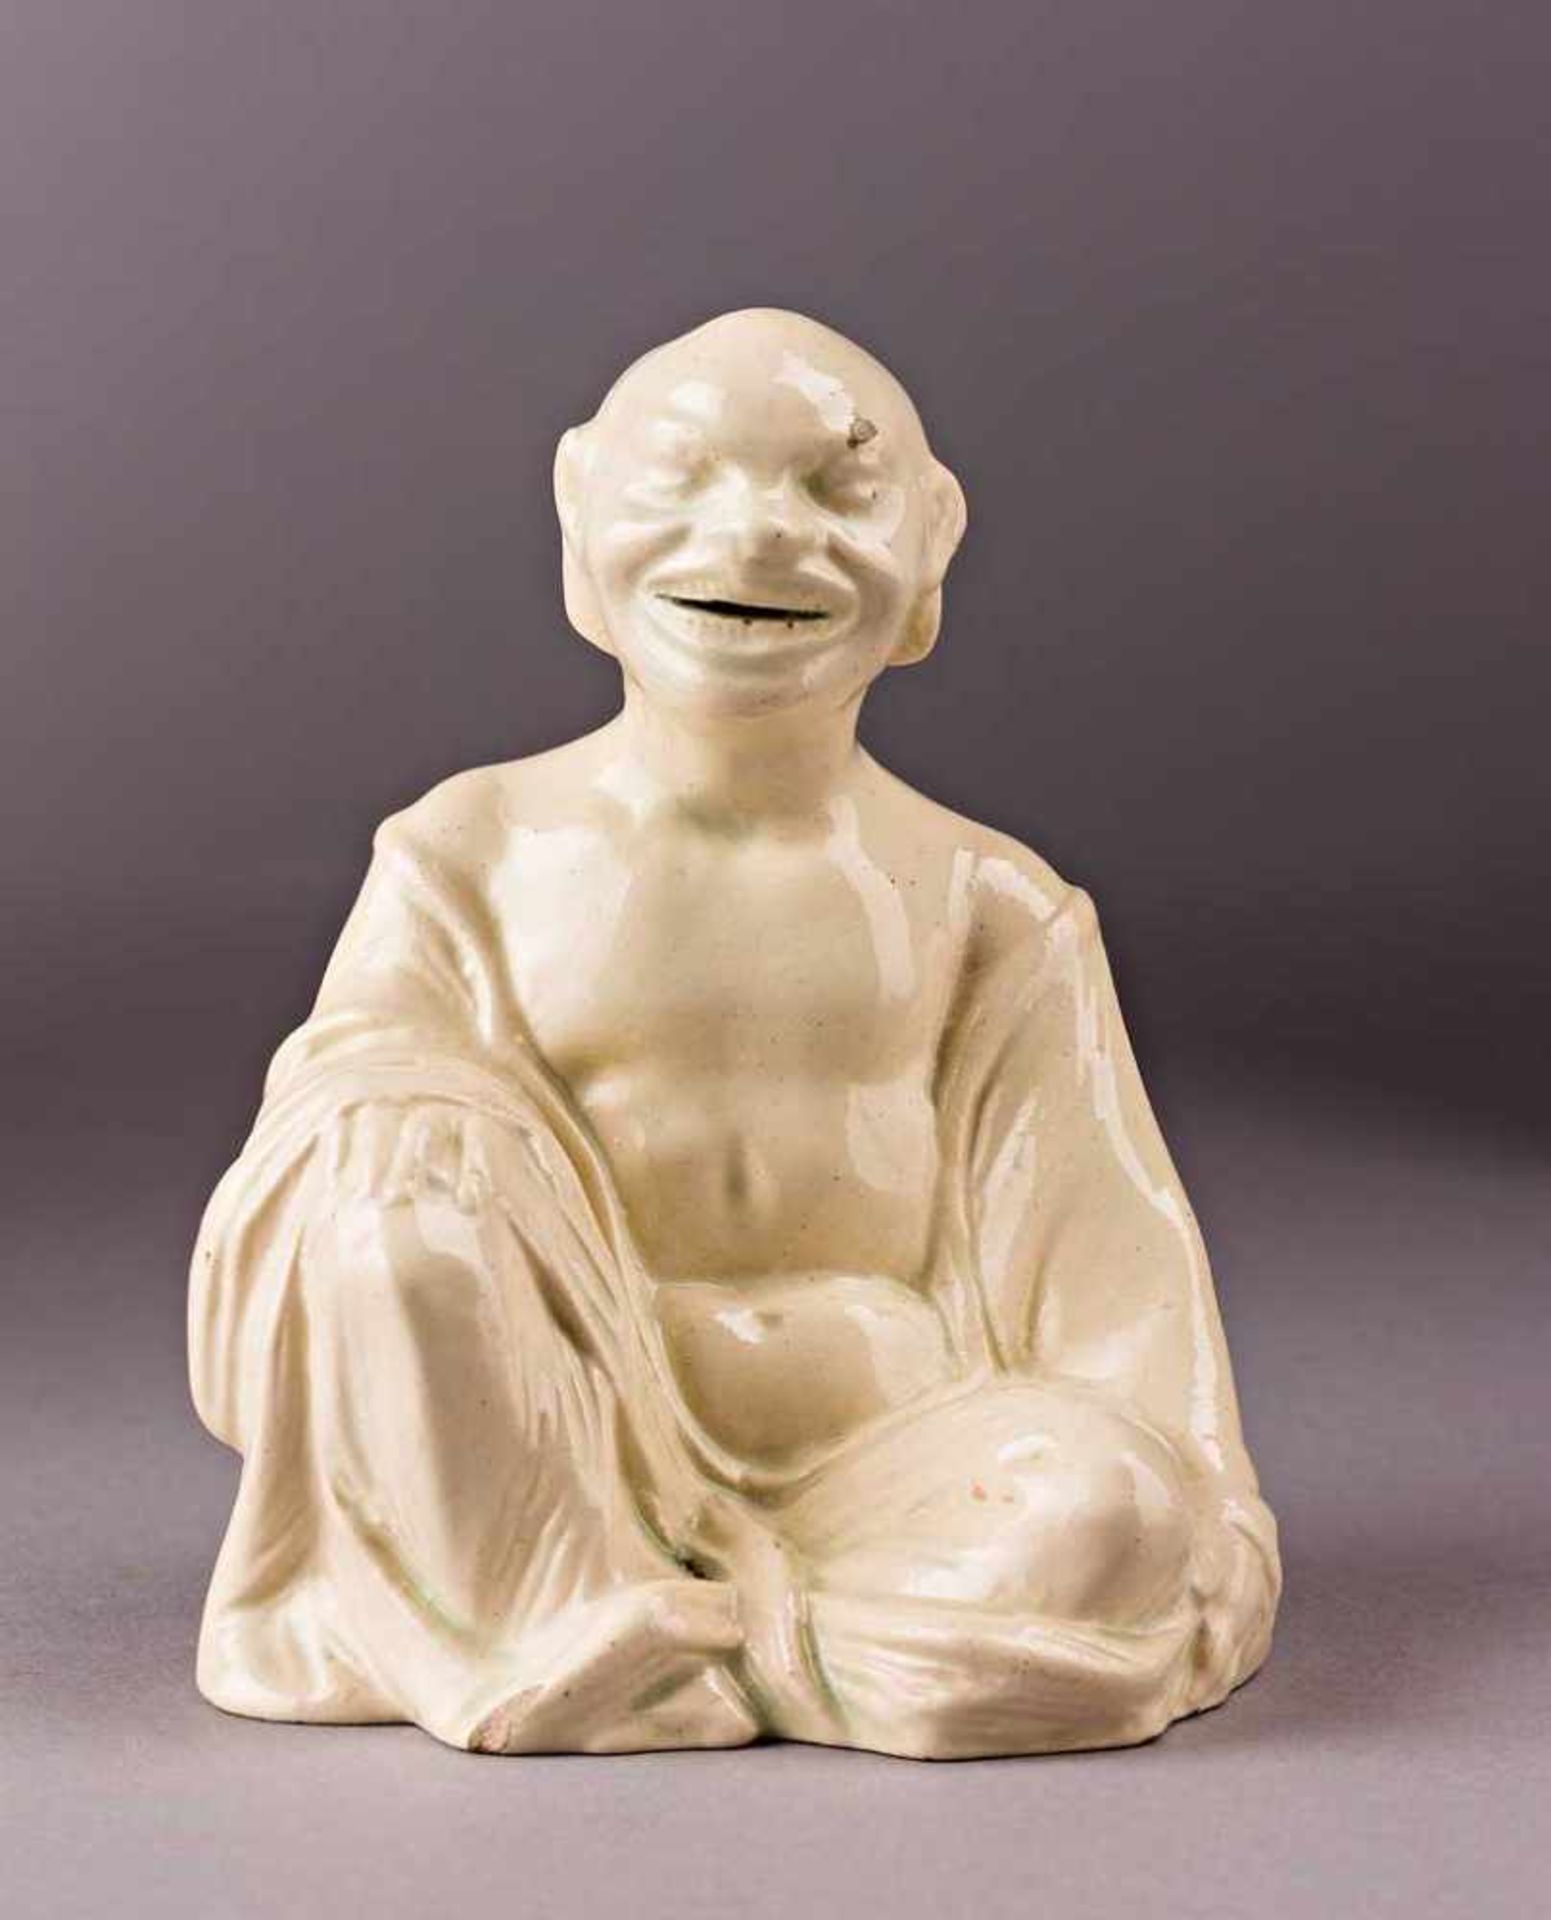 Sitzender Pagode als Räucherfigur. Monochrom weiß glasiert. Wohl Frankreich, um 1800. H 10 cm